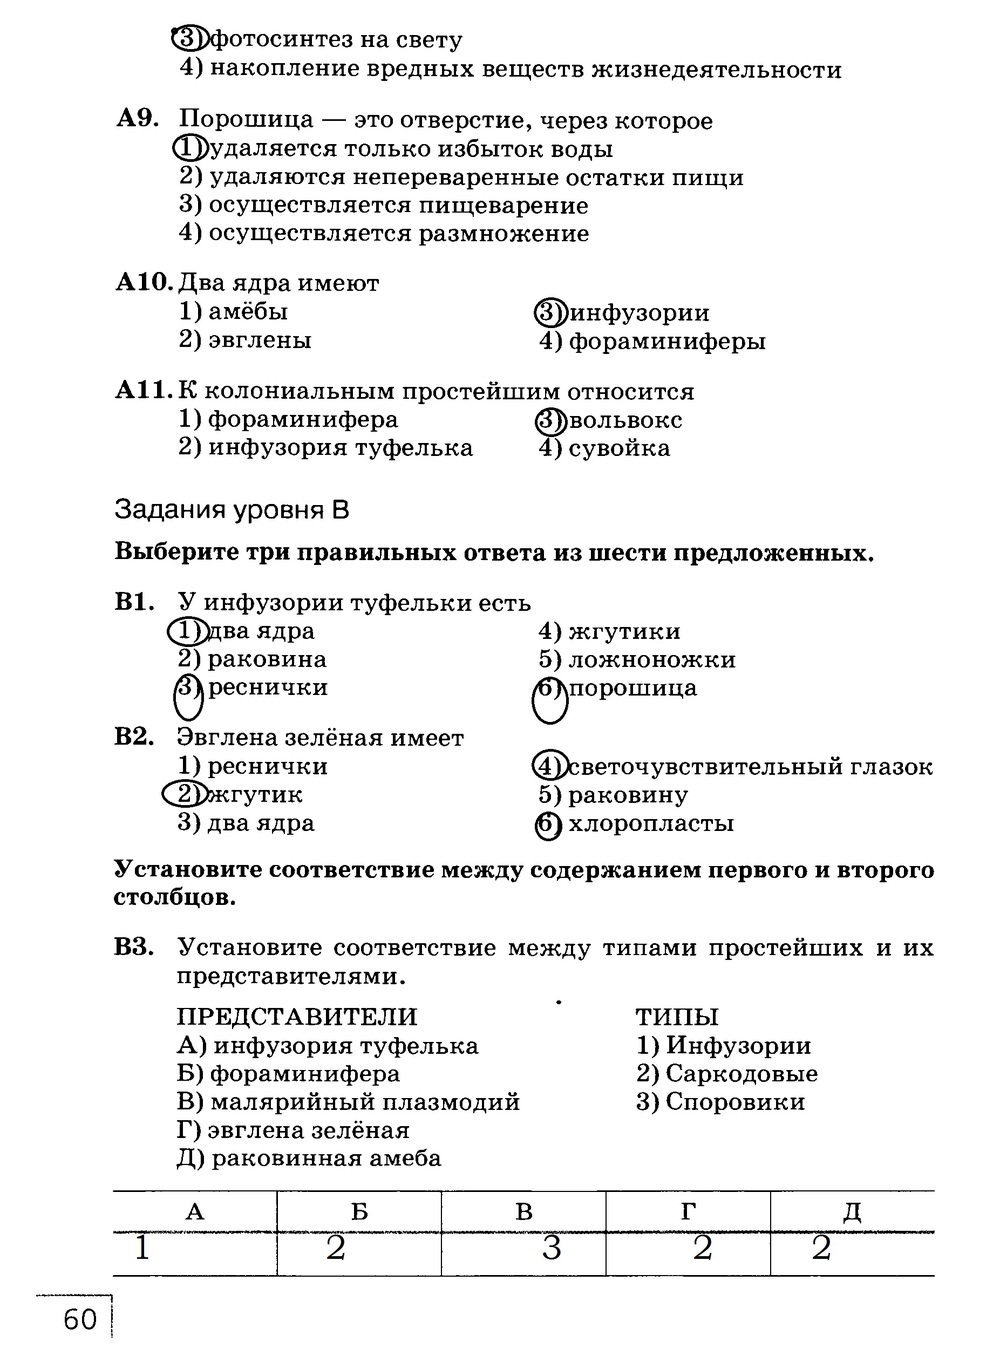 Рабочая тетрадь, 7 класс, Захаров В.Б., Сонин Н.И., 2015, задание: стр. 60